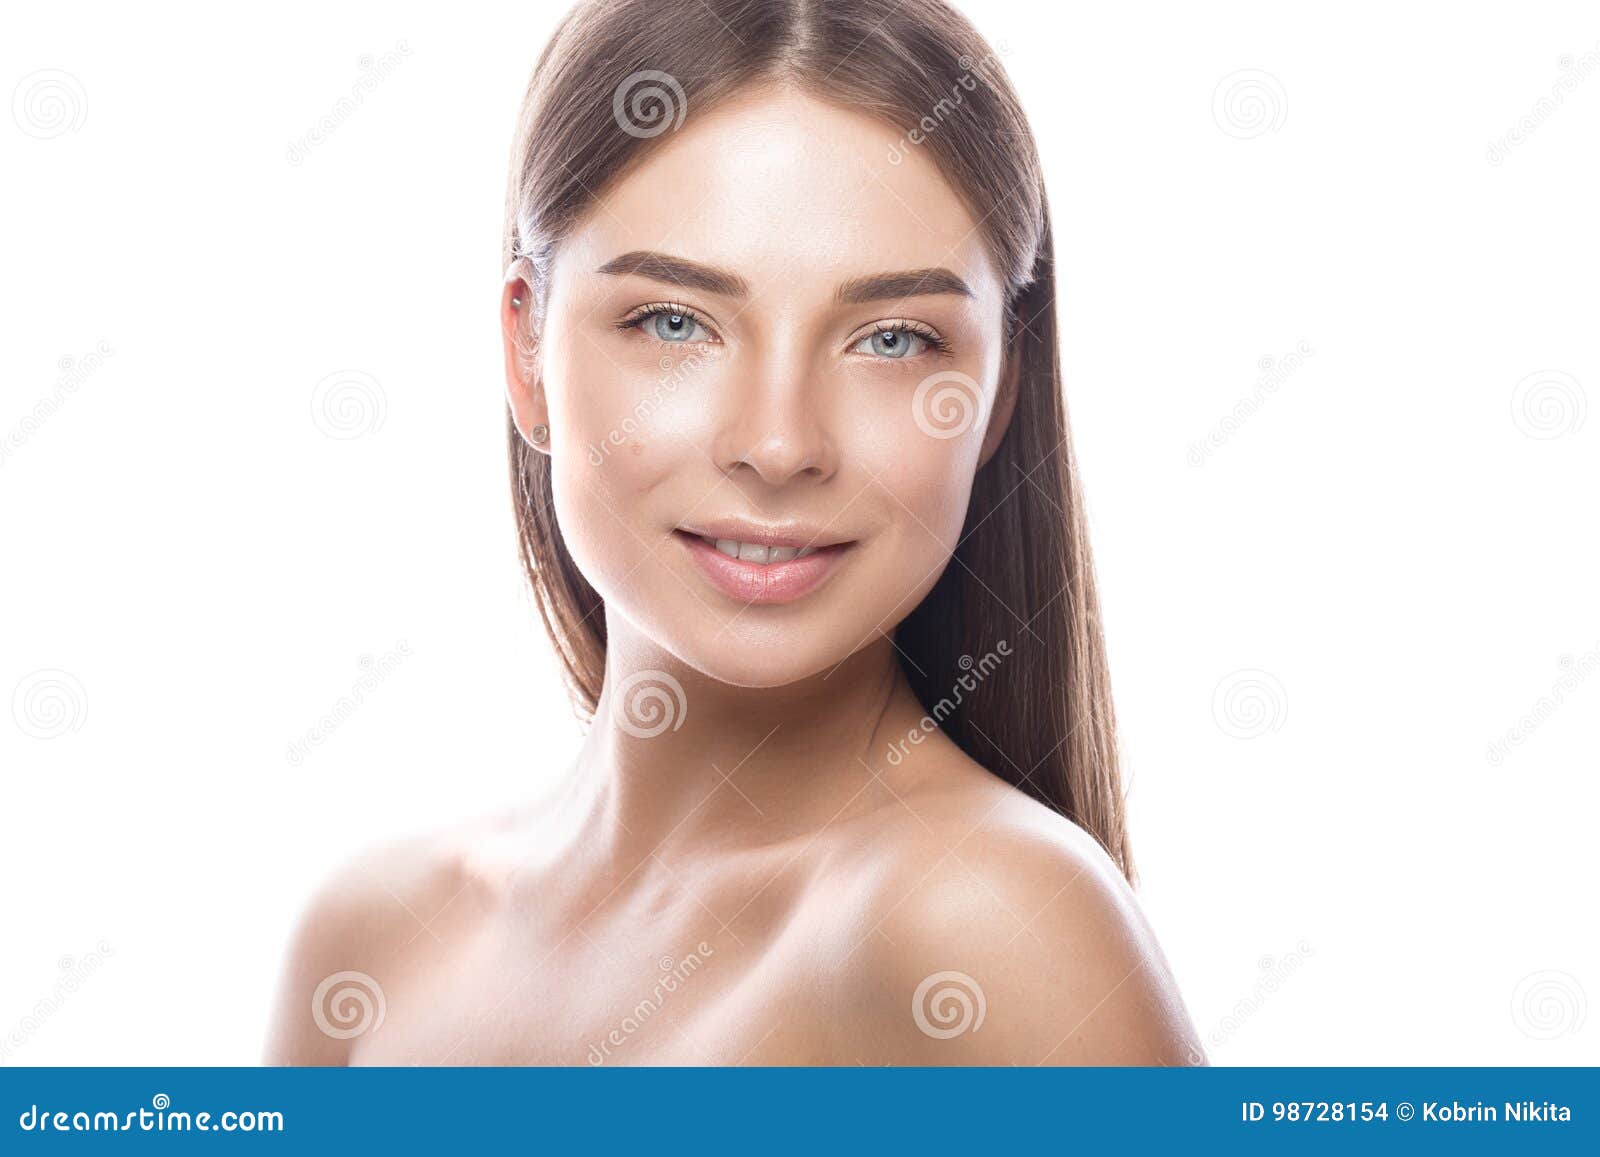 Cute Girl Face Light Skin